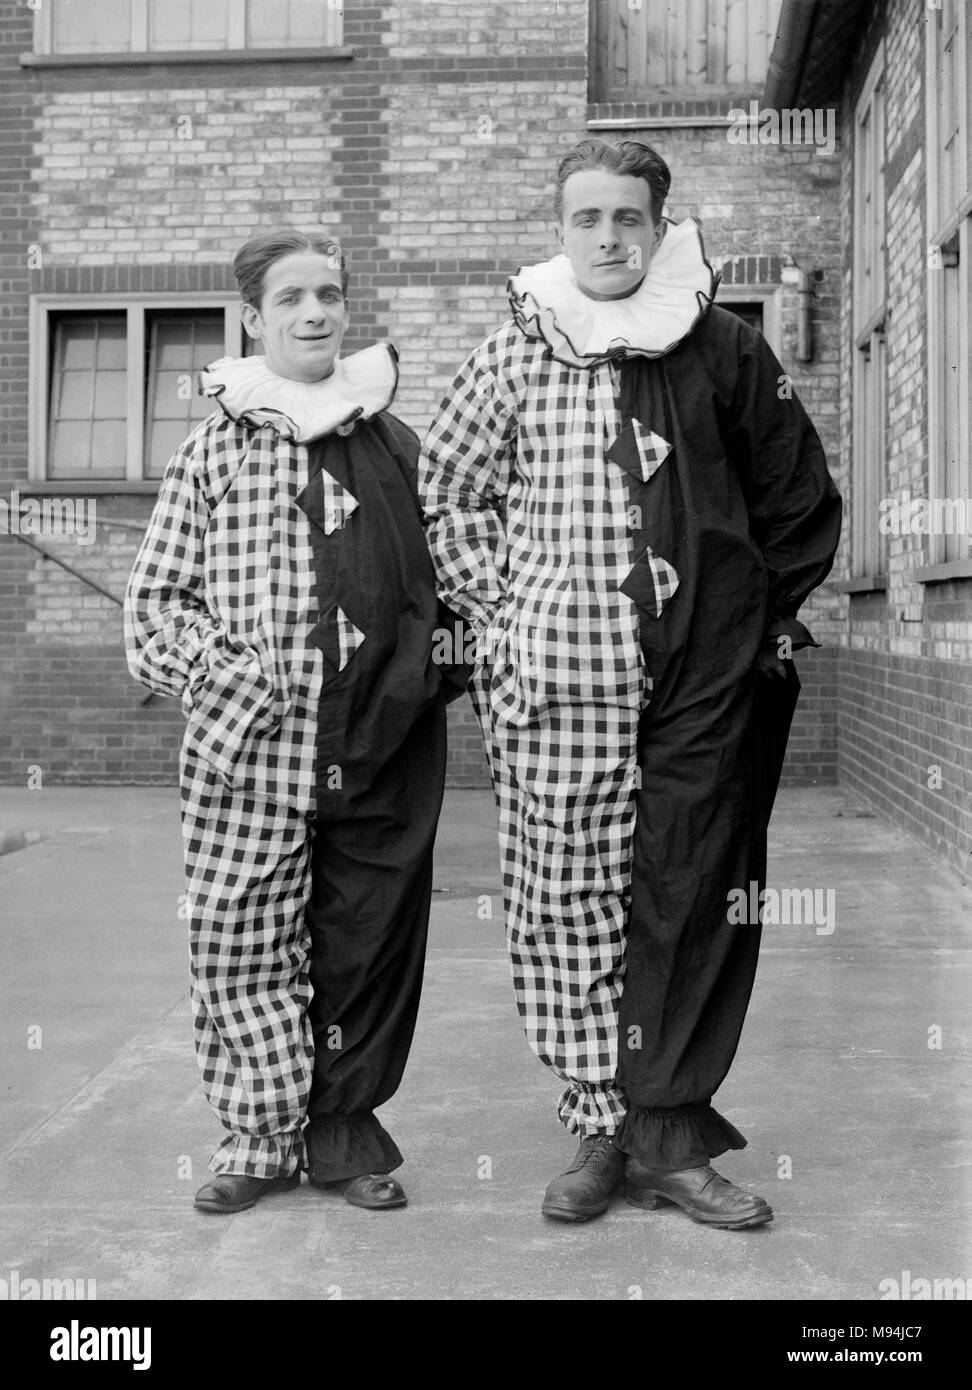 Zwei Clowns der Pierrot stil Pose in der UK, Ca. 1920. Stockfoto